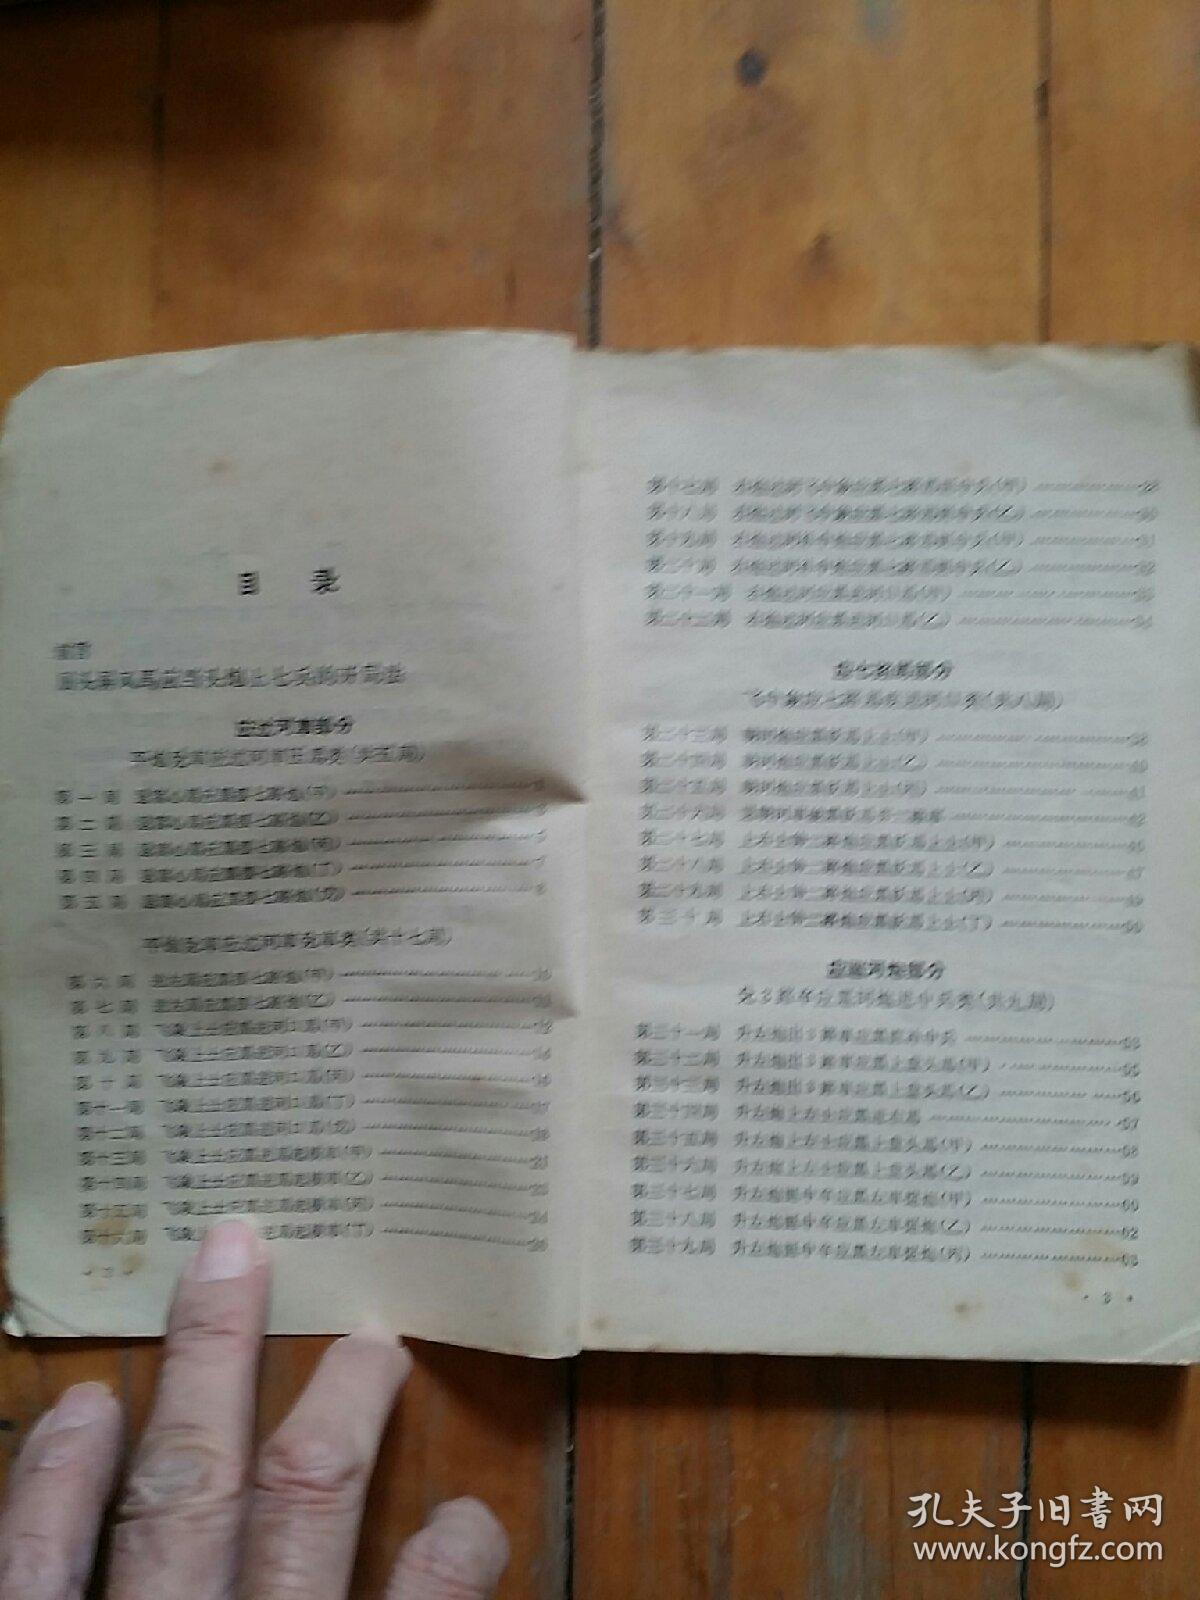 象棋后卫   王嘉良 李德林  著   黑龙江人民    1963年二版1965年四印     缺封面，封底有损，如图。